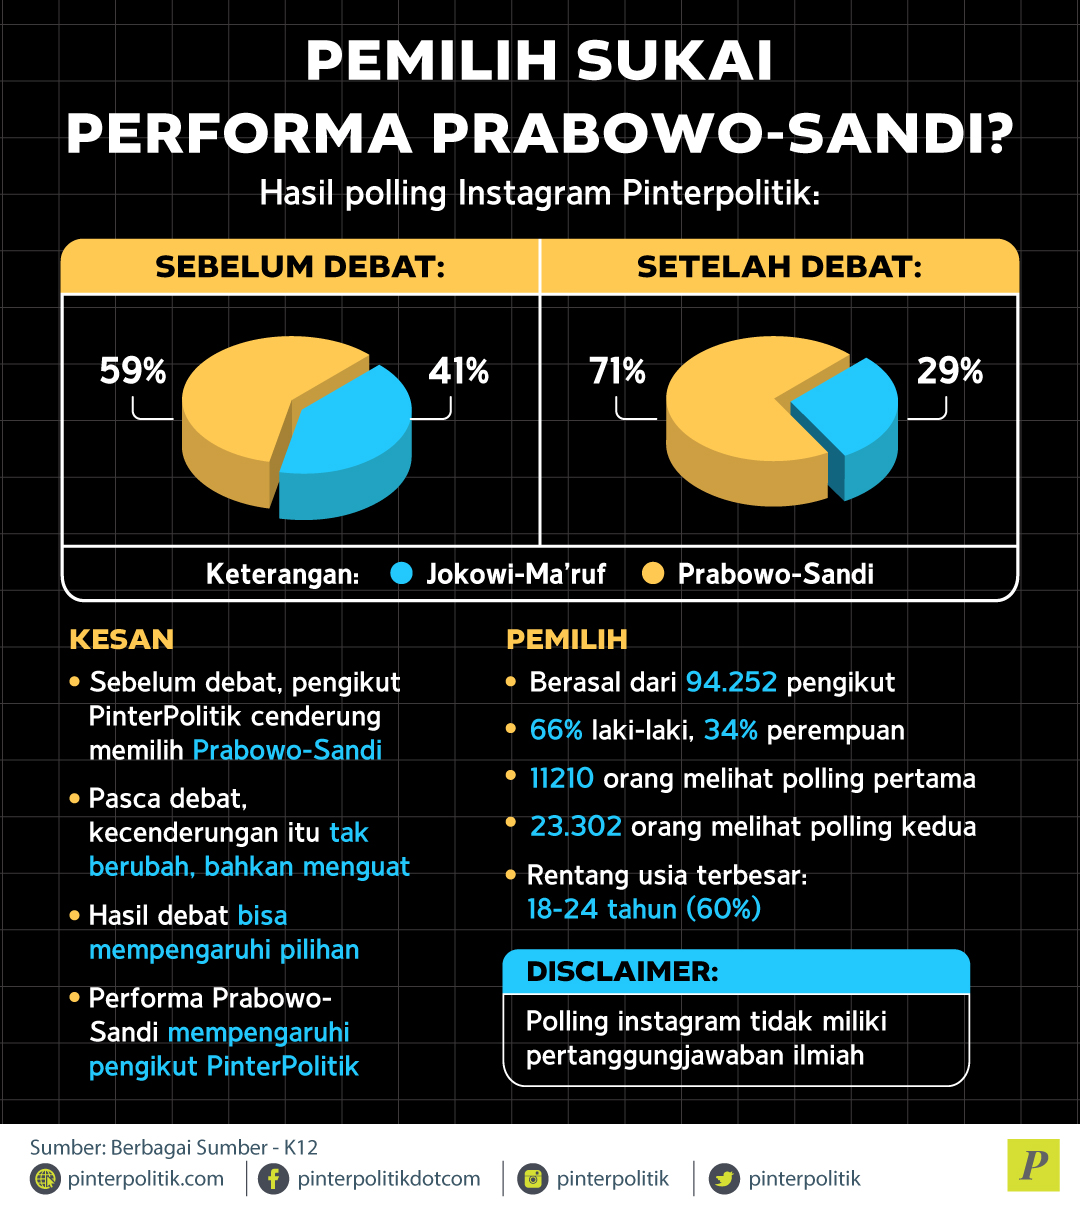 Pemilih Sukai Performa Prabowo-Sandi